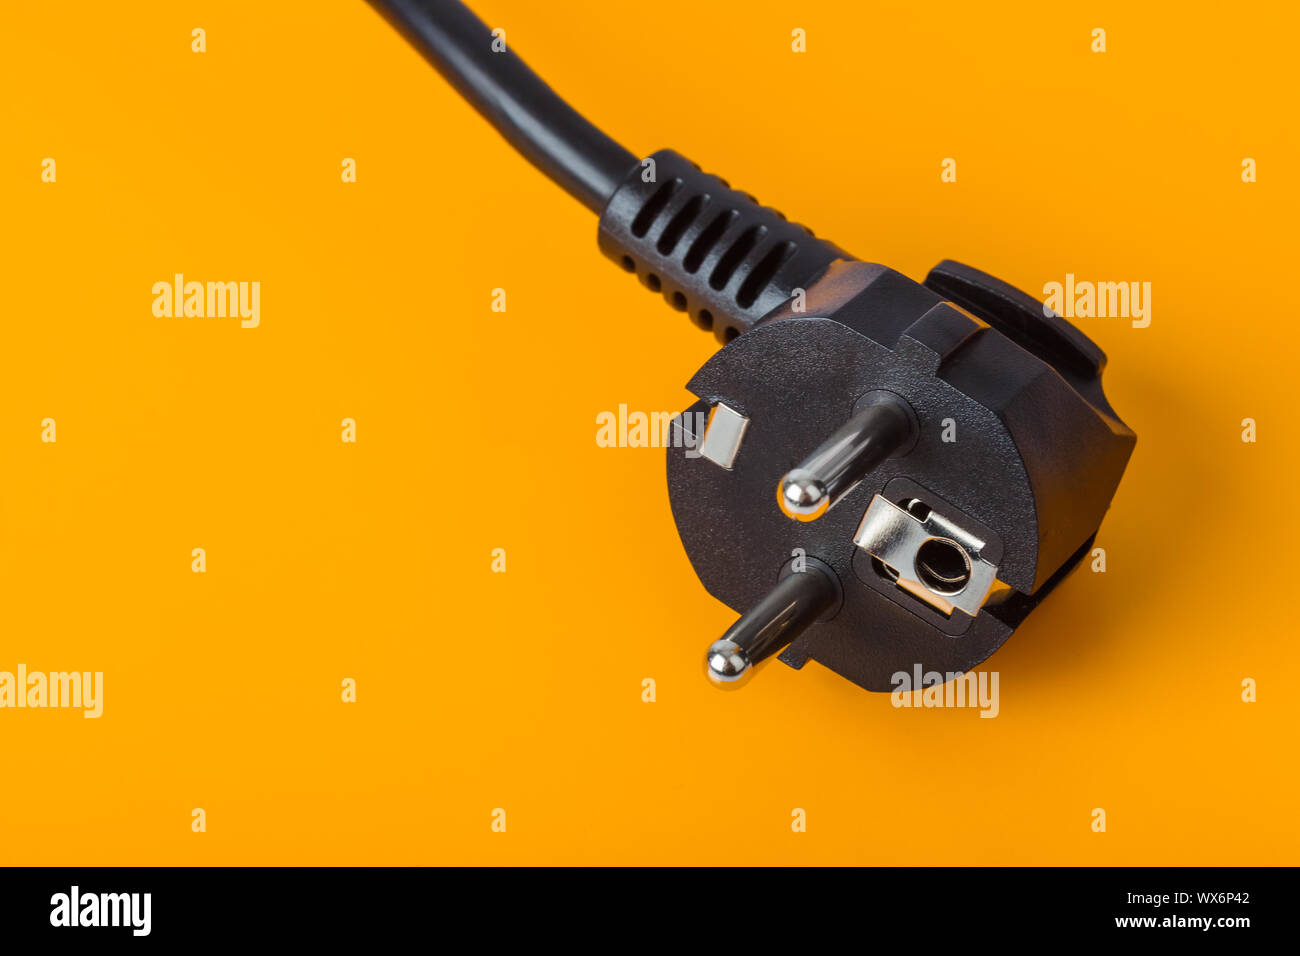 Electrical plug on orange background Stock Photo